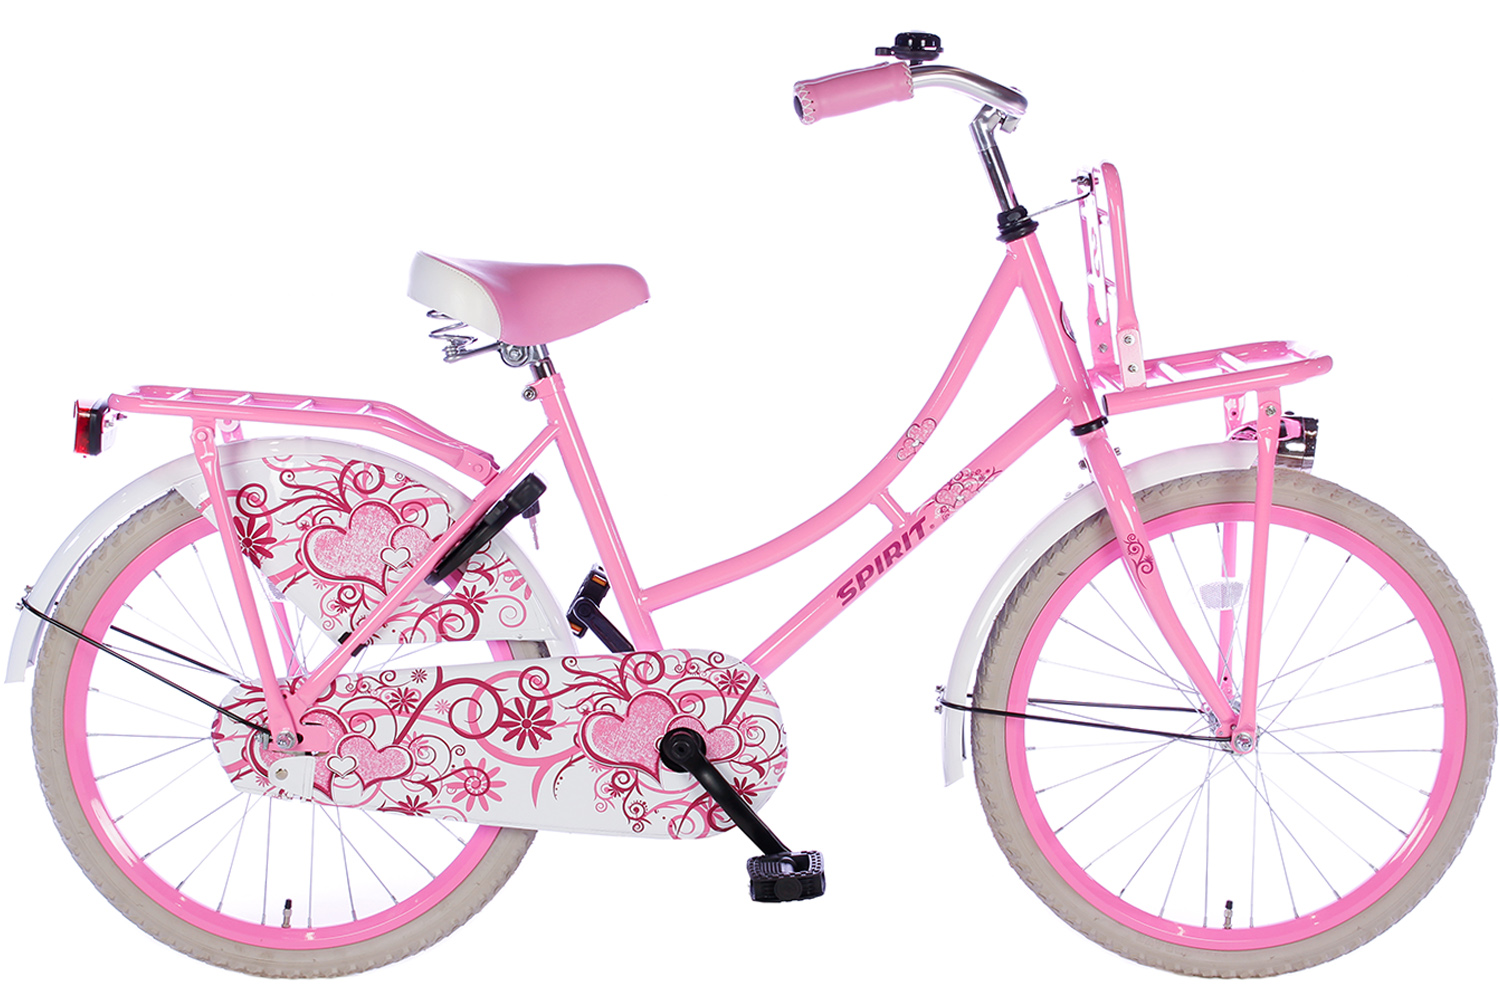 Outlook Ontwarren Autonoom Spirit Omafiets Roze 22 inch - Meisjesfiets | City-Bikes.nl